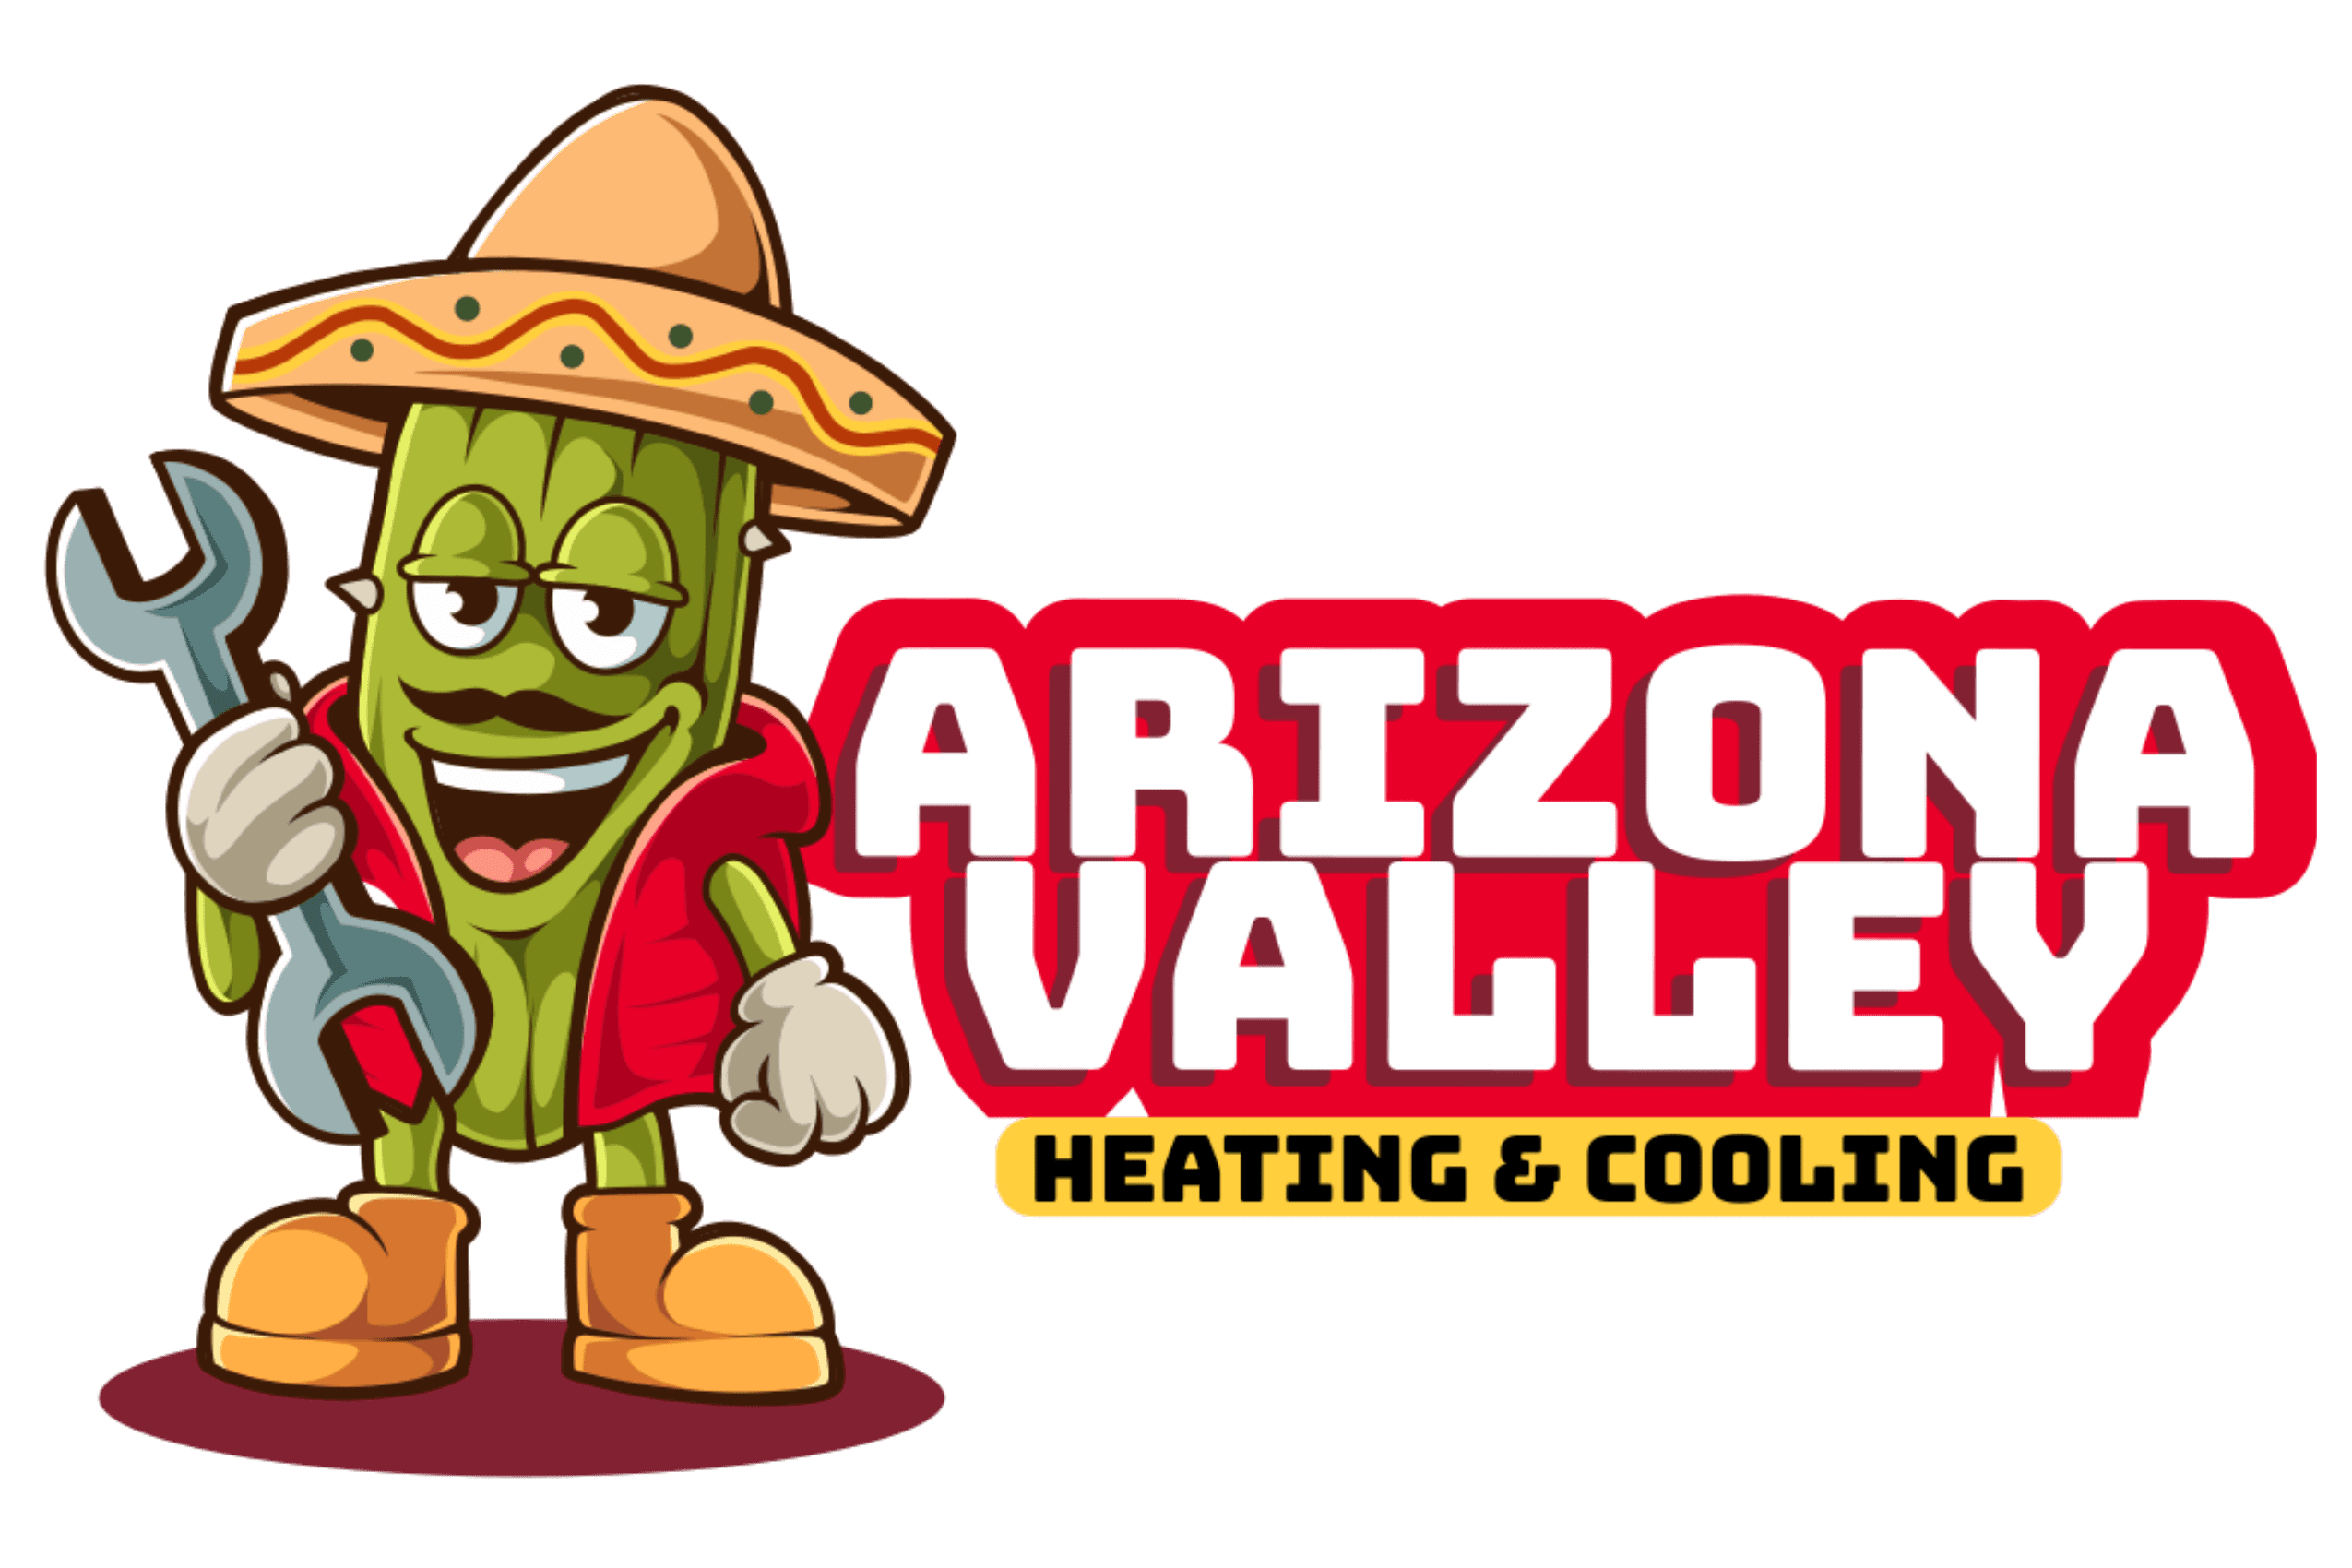 Arizona Valley HVAC